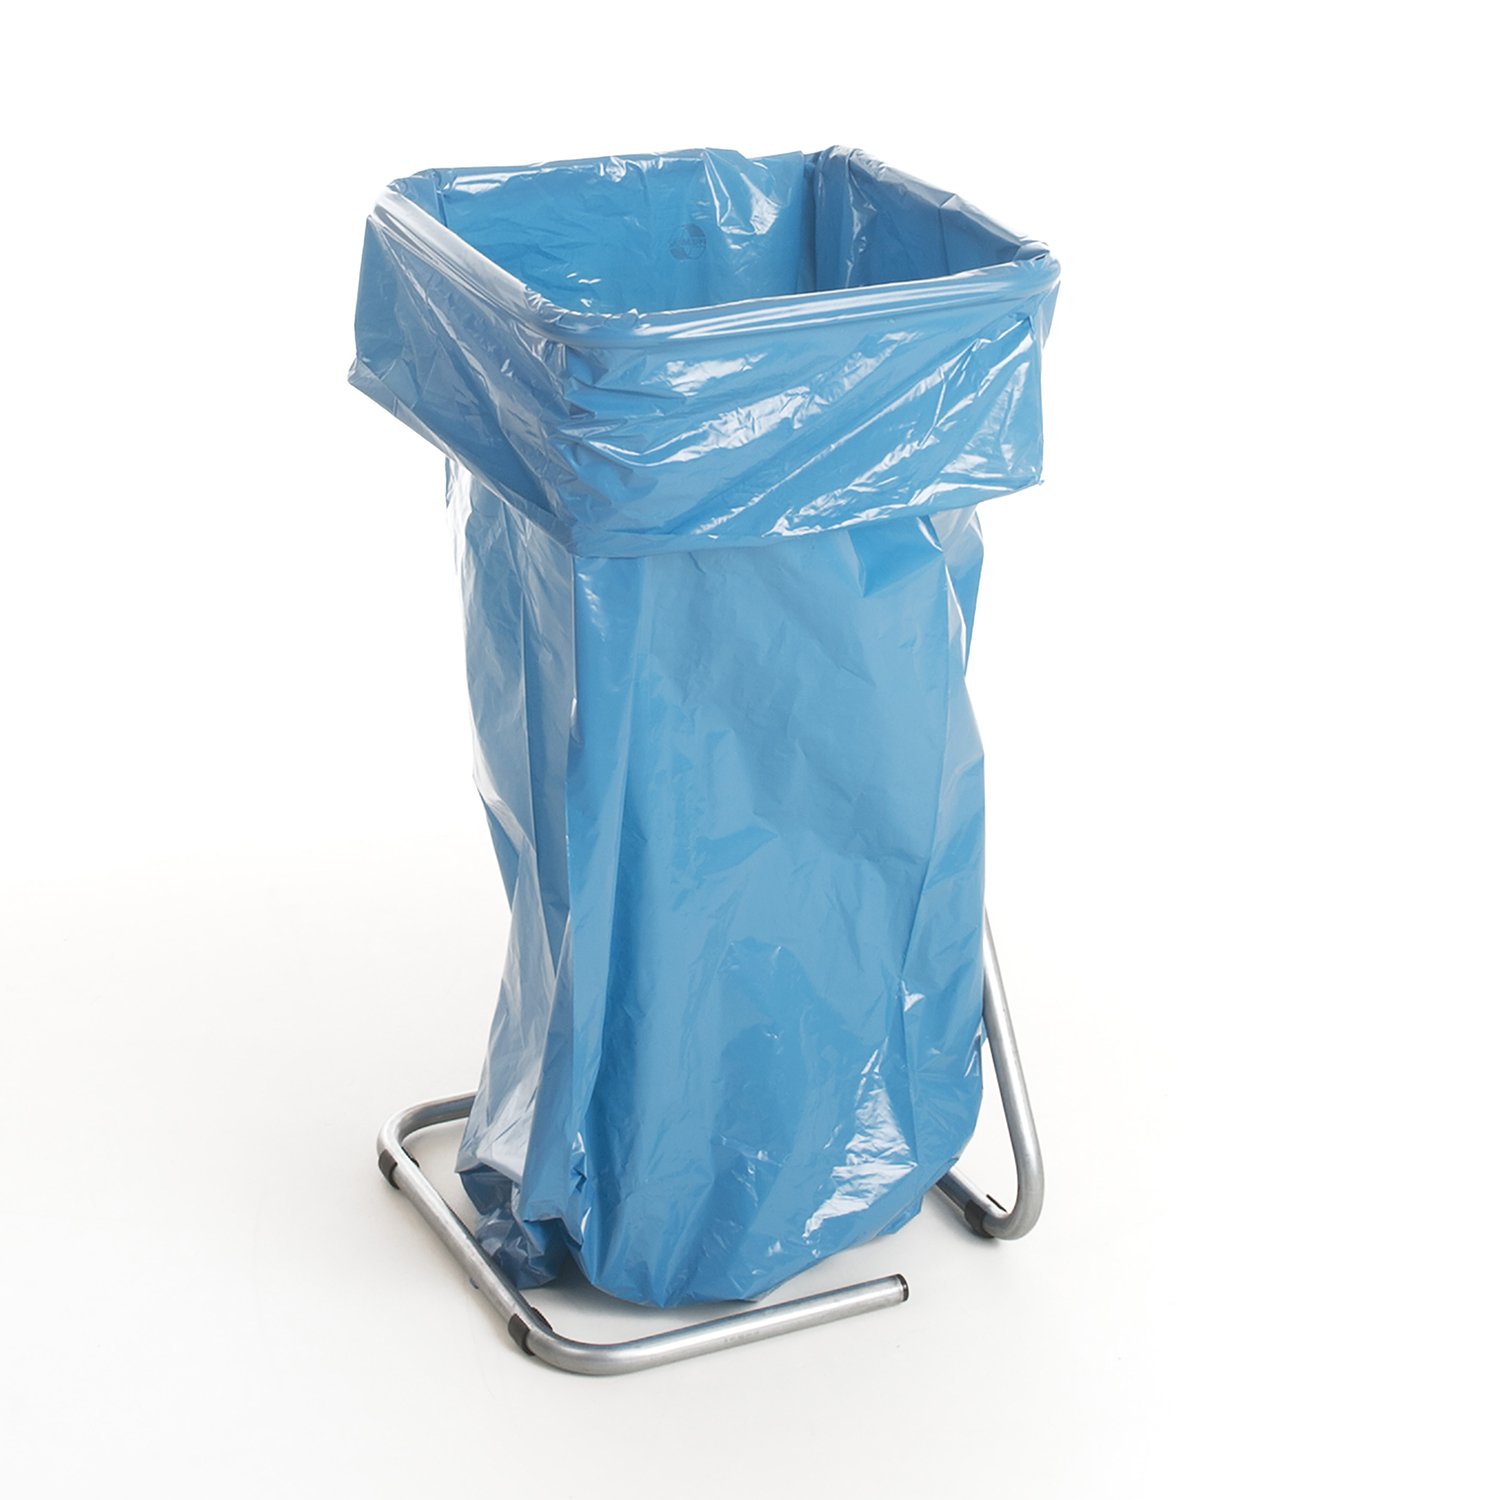 Sac poubelle 120 l, PEBD recyclé, 35 mu, sac bleu, non imprimé, non perforé, sans lien de fermeture detail 2